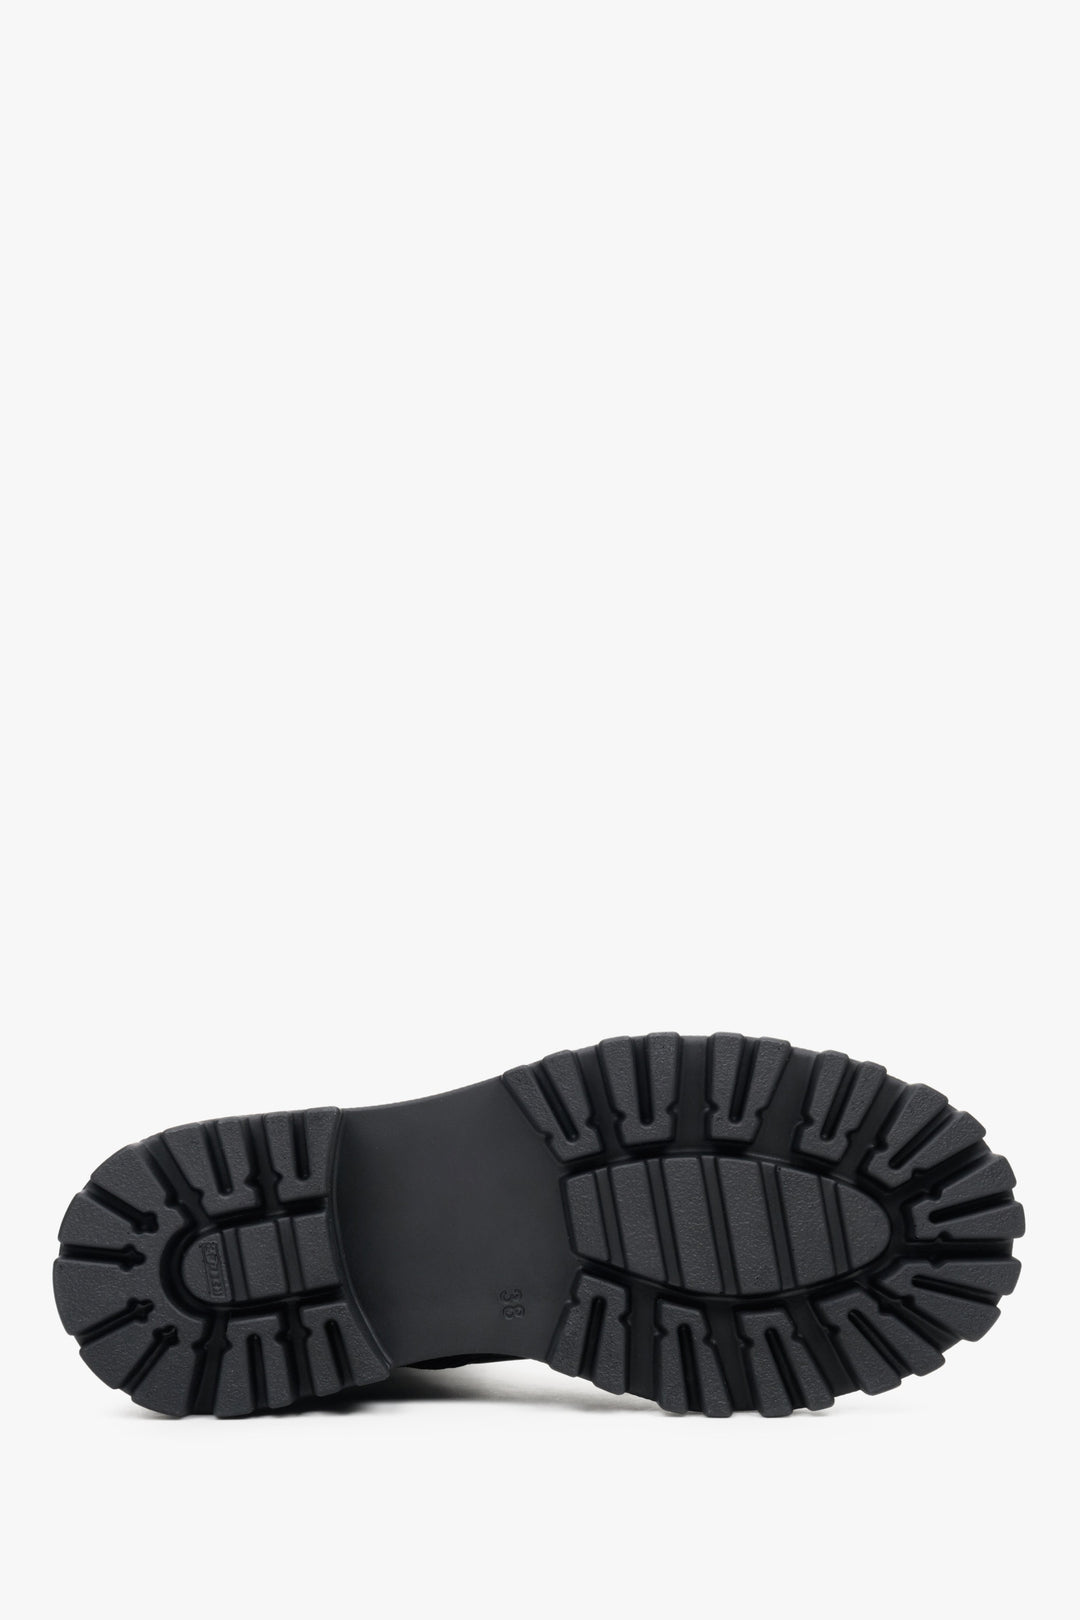 Damskie, wysokie botki jesienne w kolorze czarnym Estro - zbliżenie na podeszwę buta.